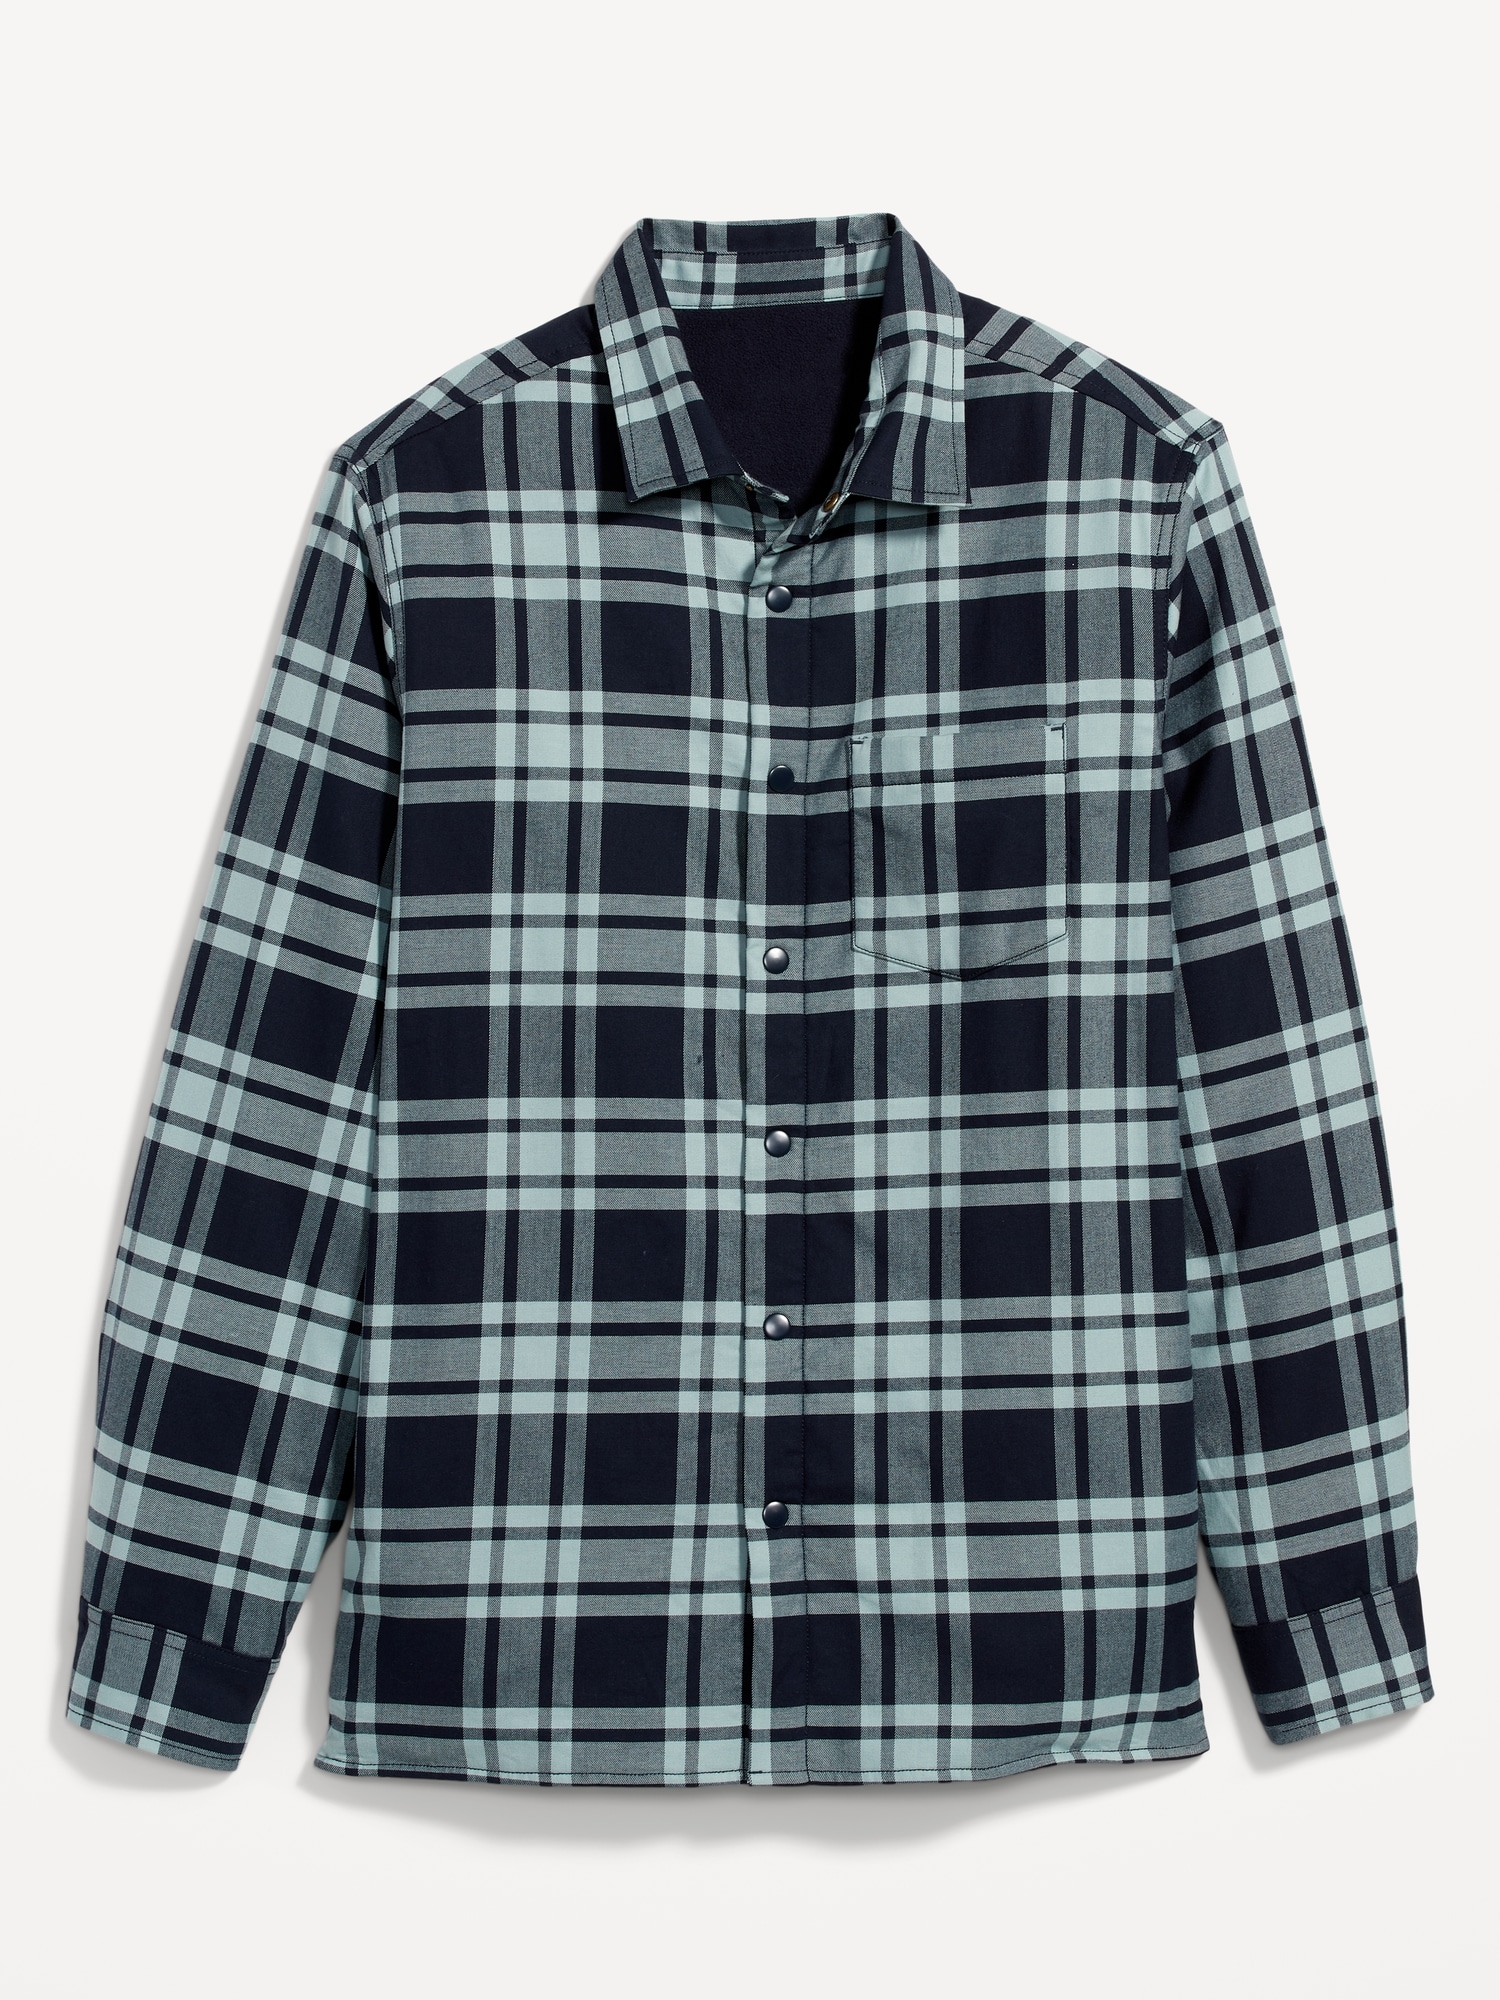 YYDGH Men's Full Zip Fleece Shirt Jackets Fleece Lined Button Down Coats  Soft Warm Shackets Hooded Drawstring Outwear